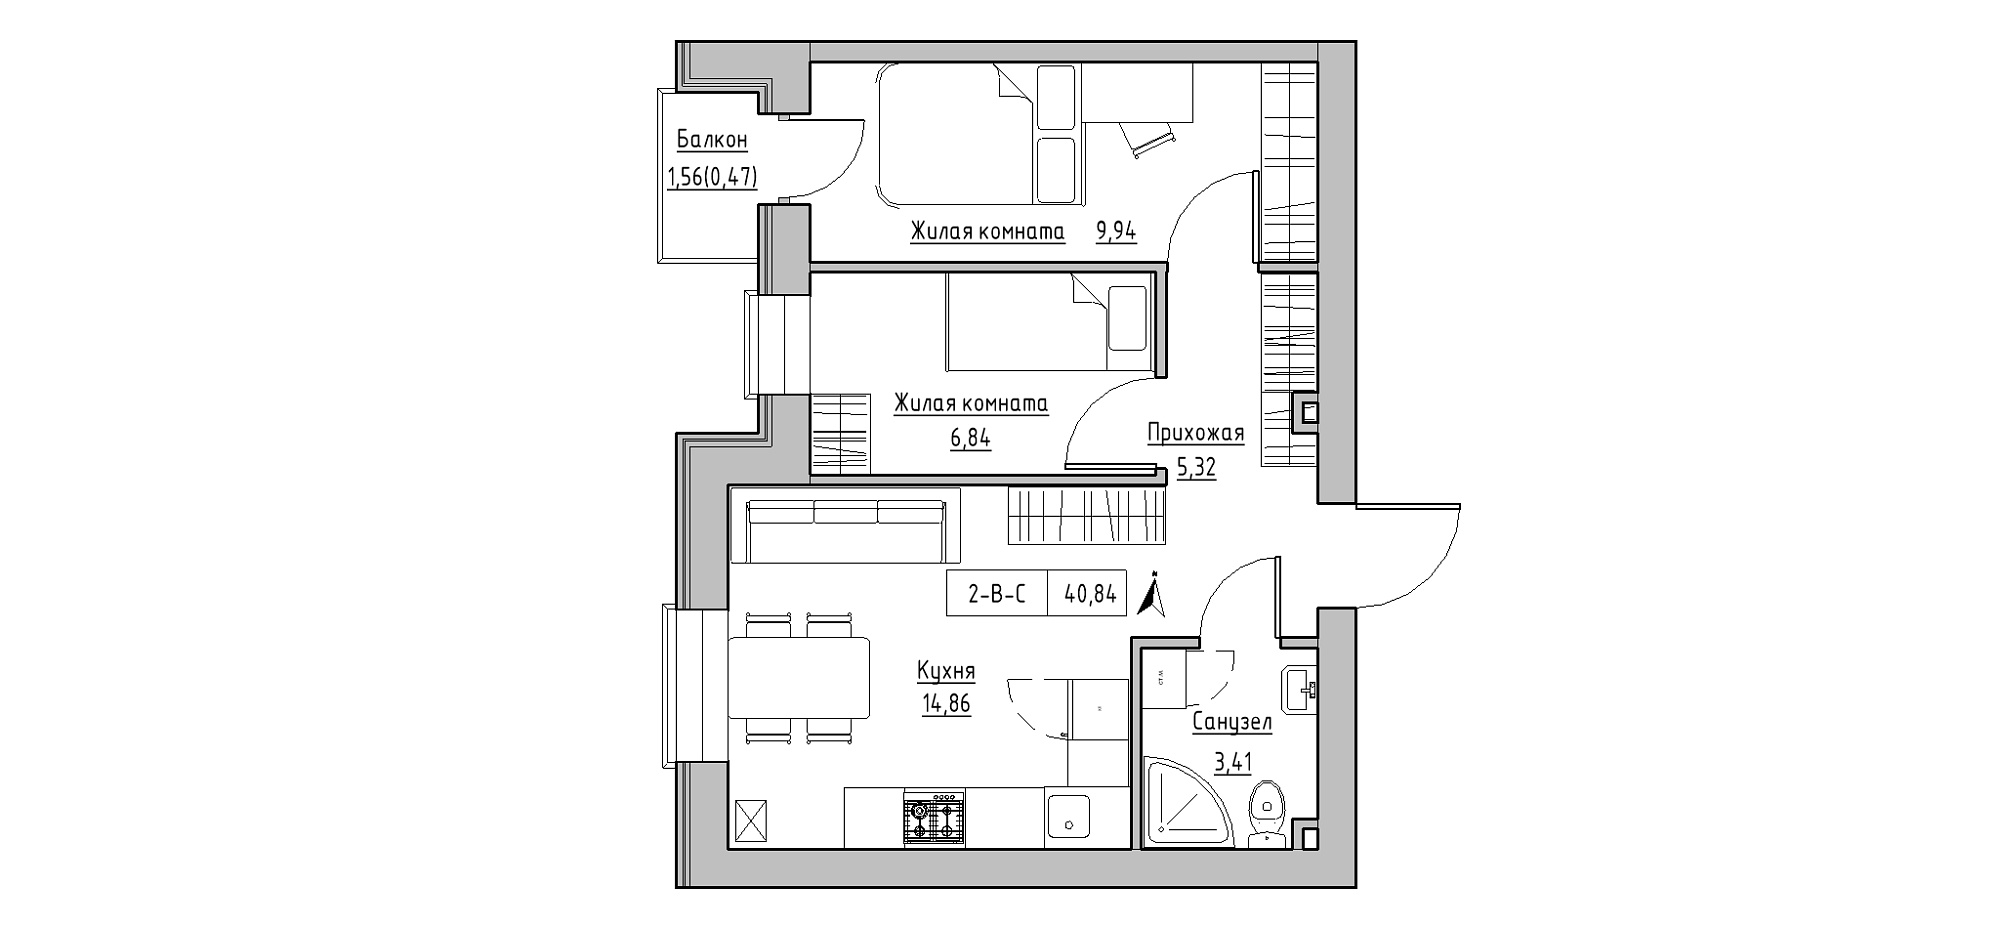 Планування 2-к квартира площею 40.84м2, KS-020-03/0010.